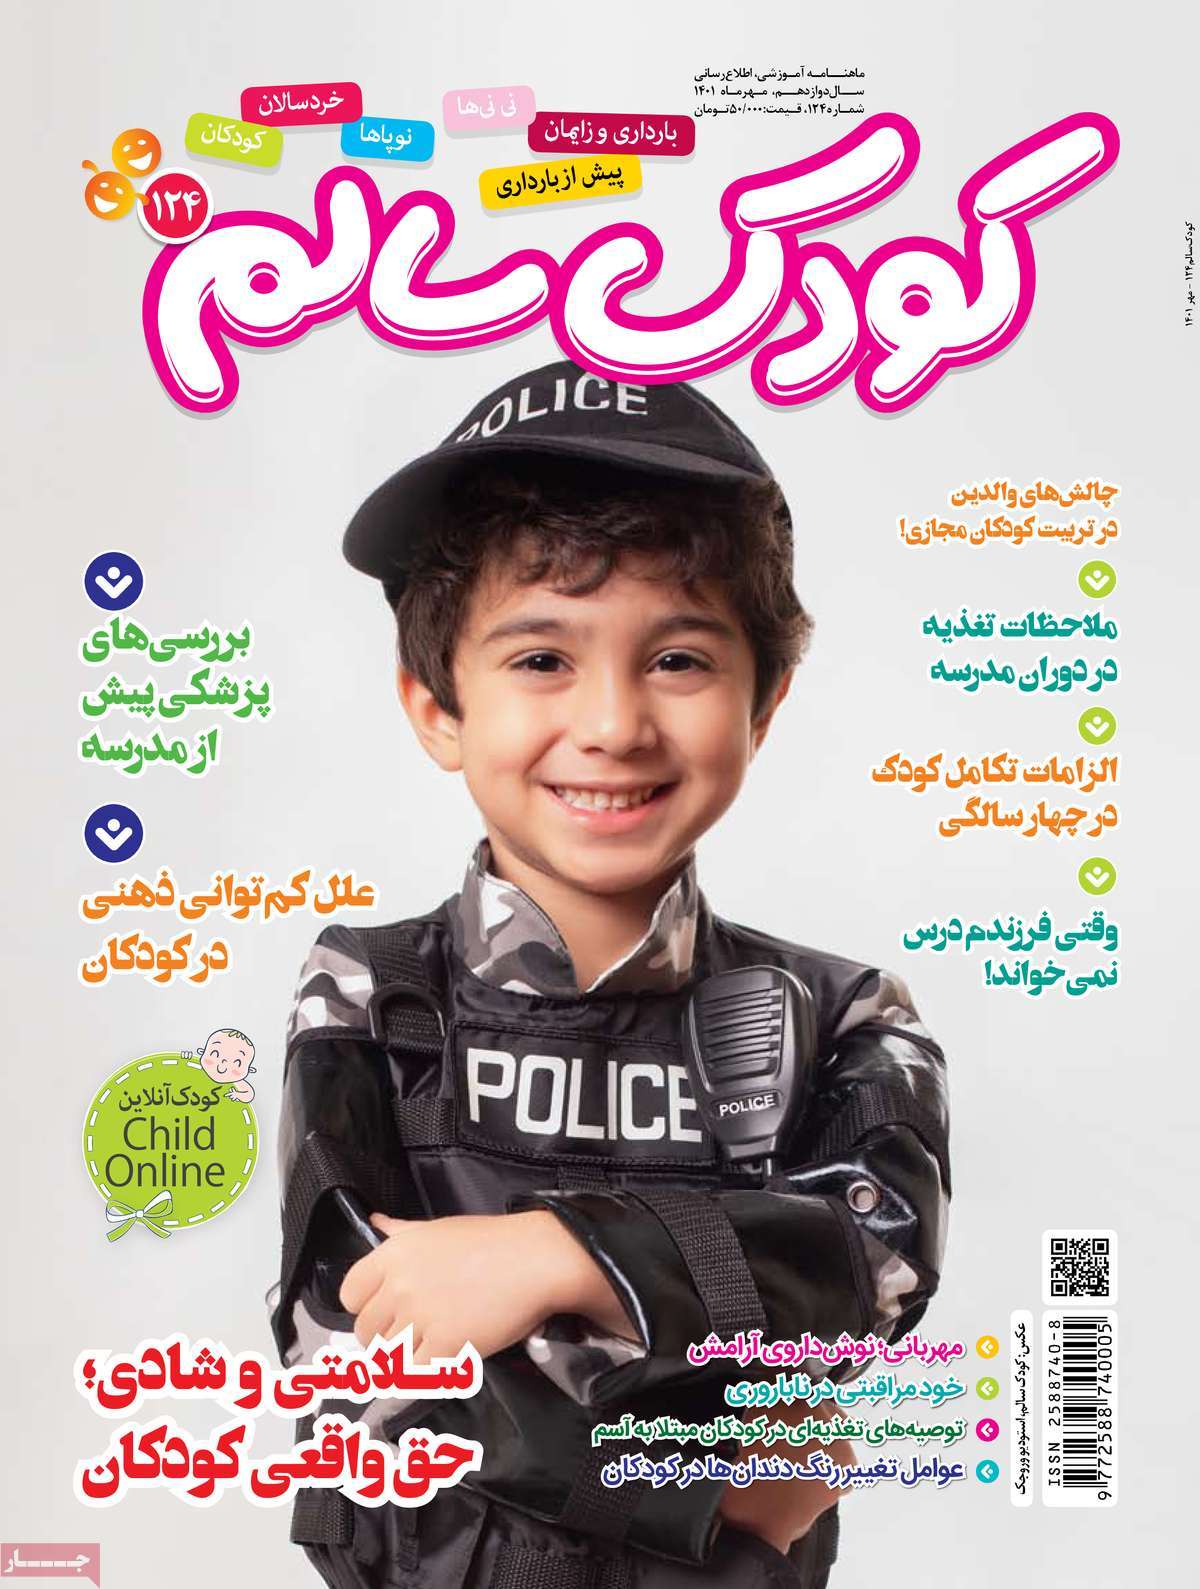 صفحه نخست مجله کودک سالم - شنبه, ۰۲ مهر ۱۴۰۱